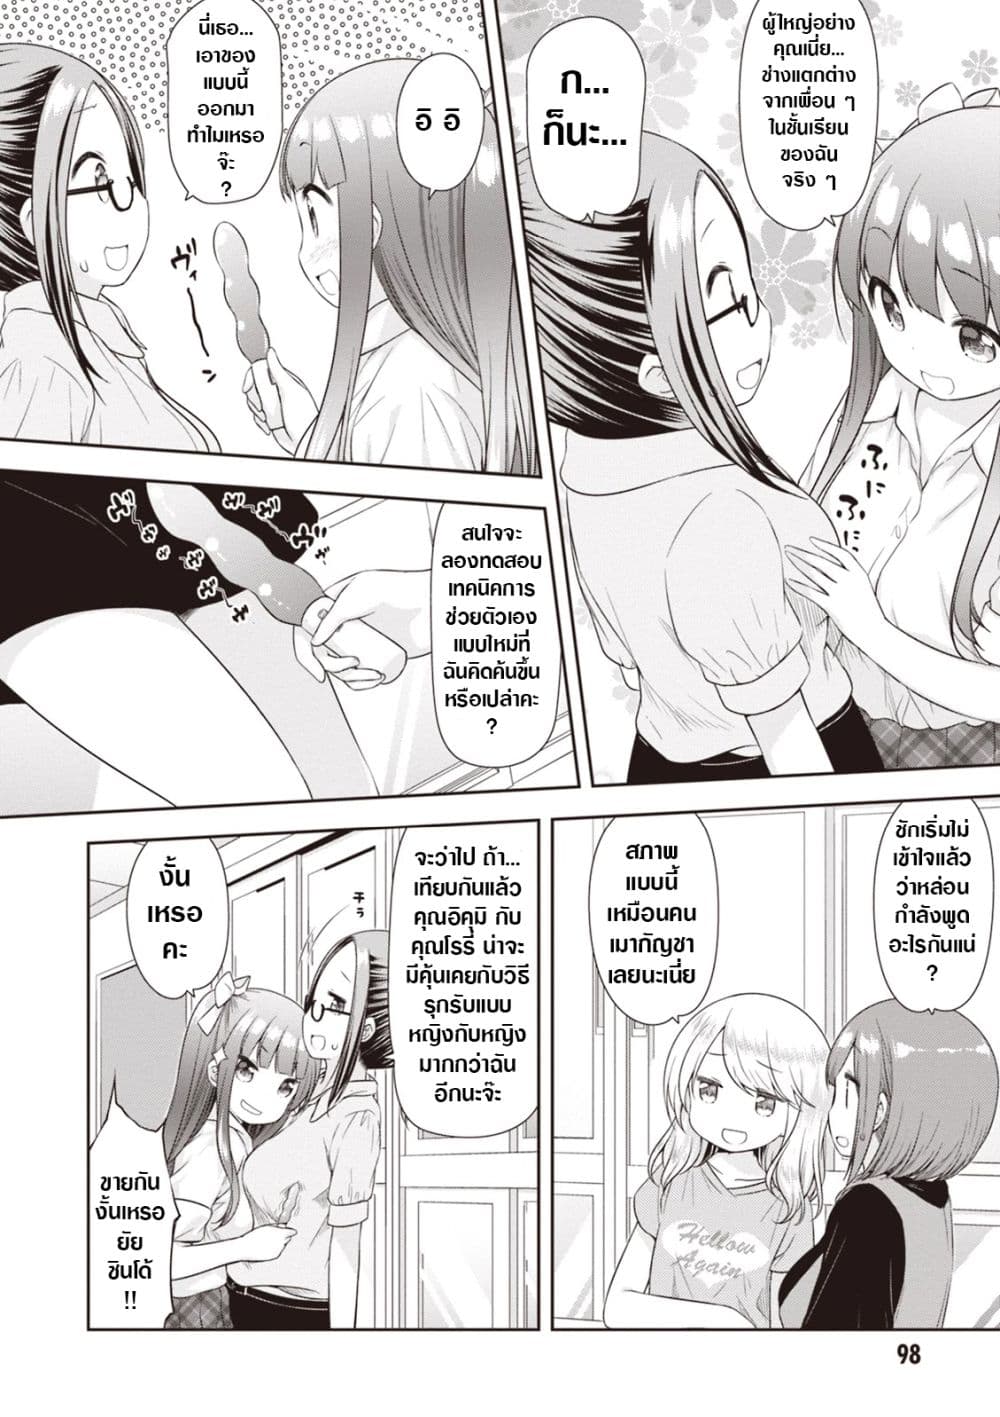 A Girl Meets Sex Toys: Akane Oguri Indulge In Onanism 6-6